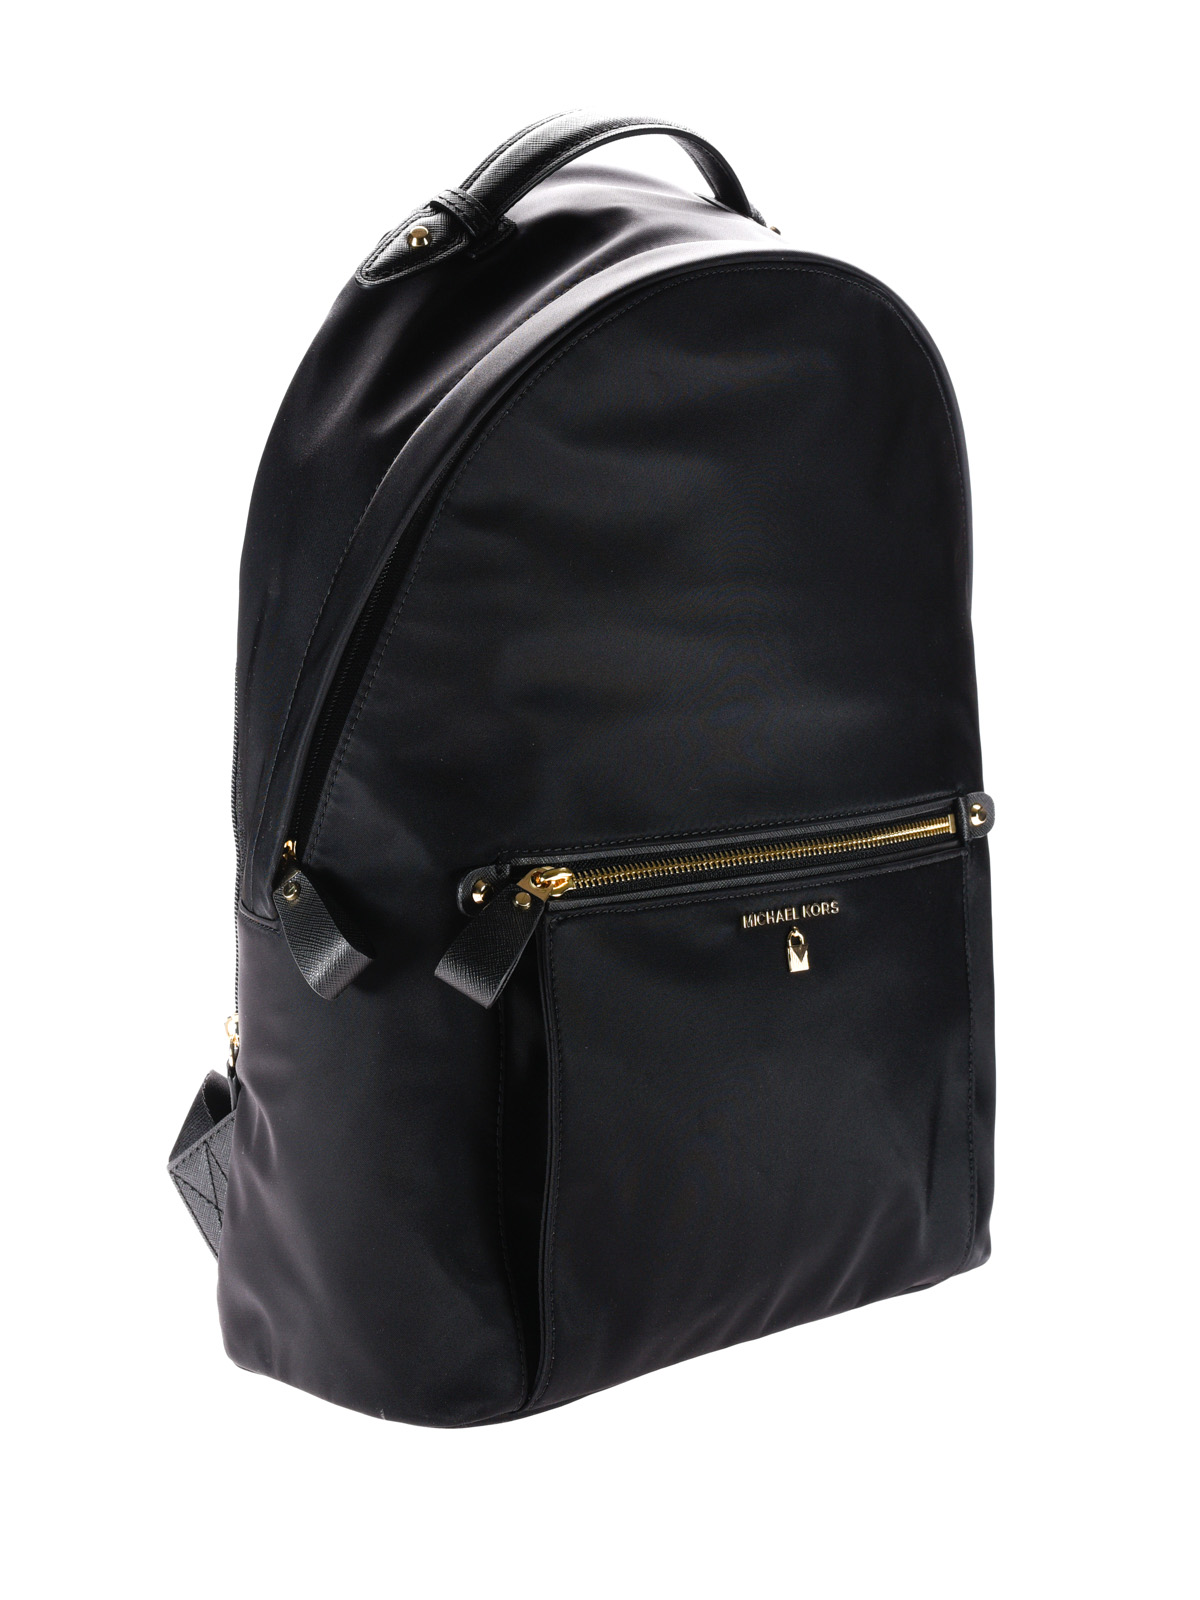 nylon michael kors backpack